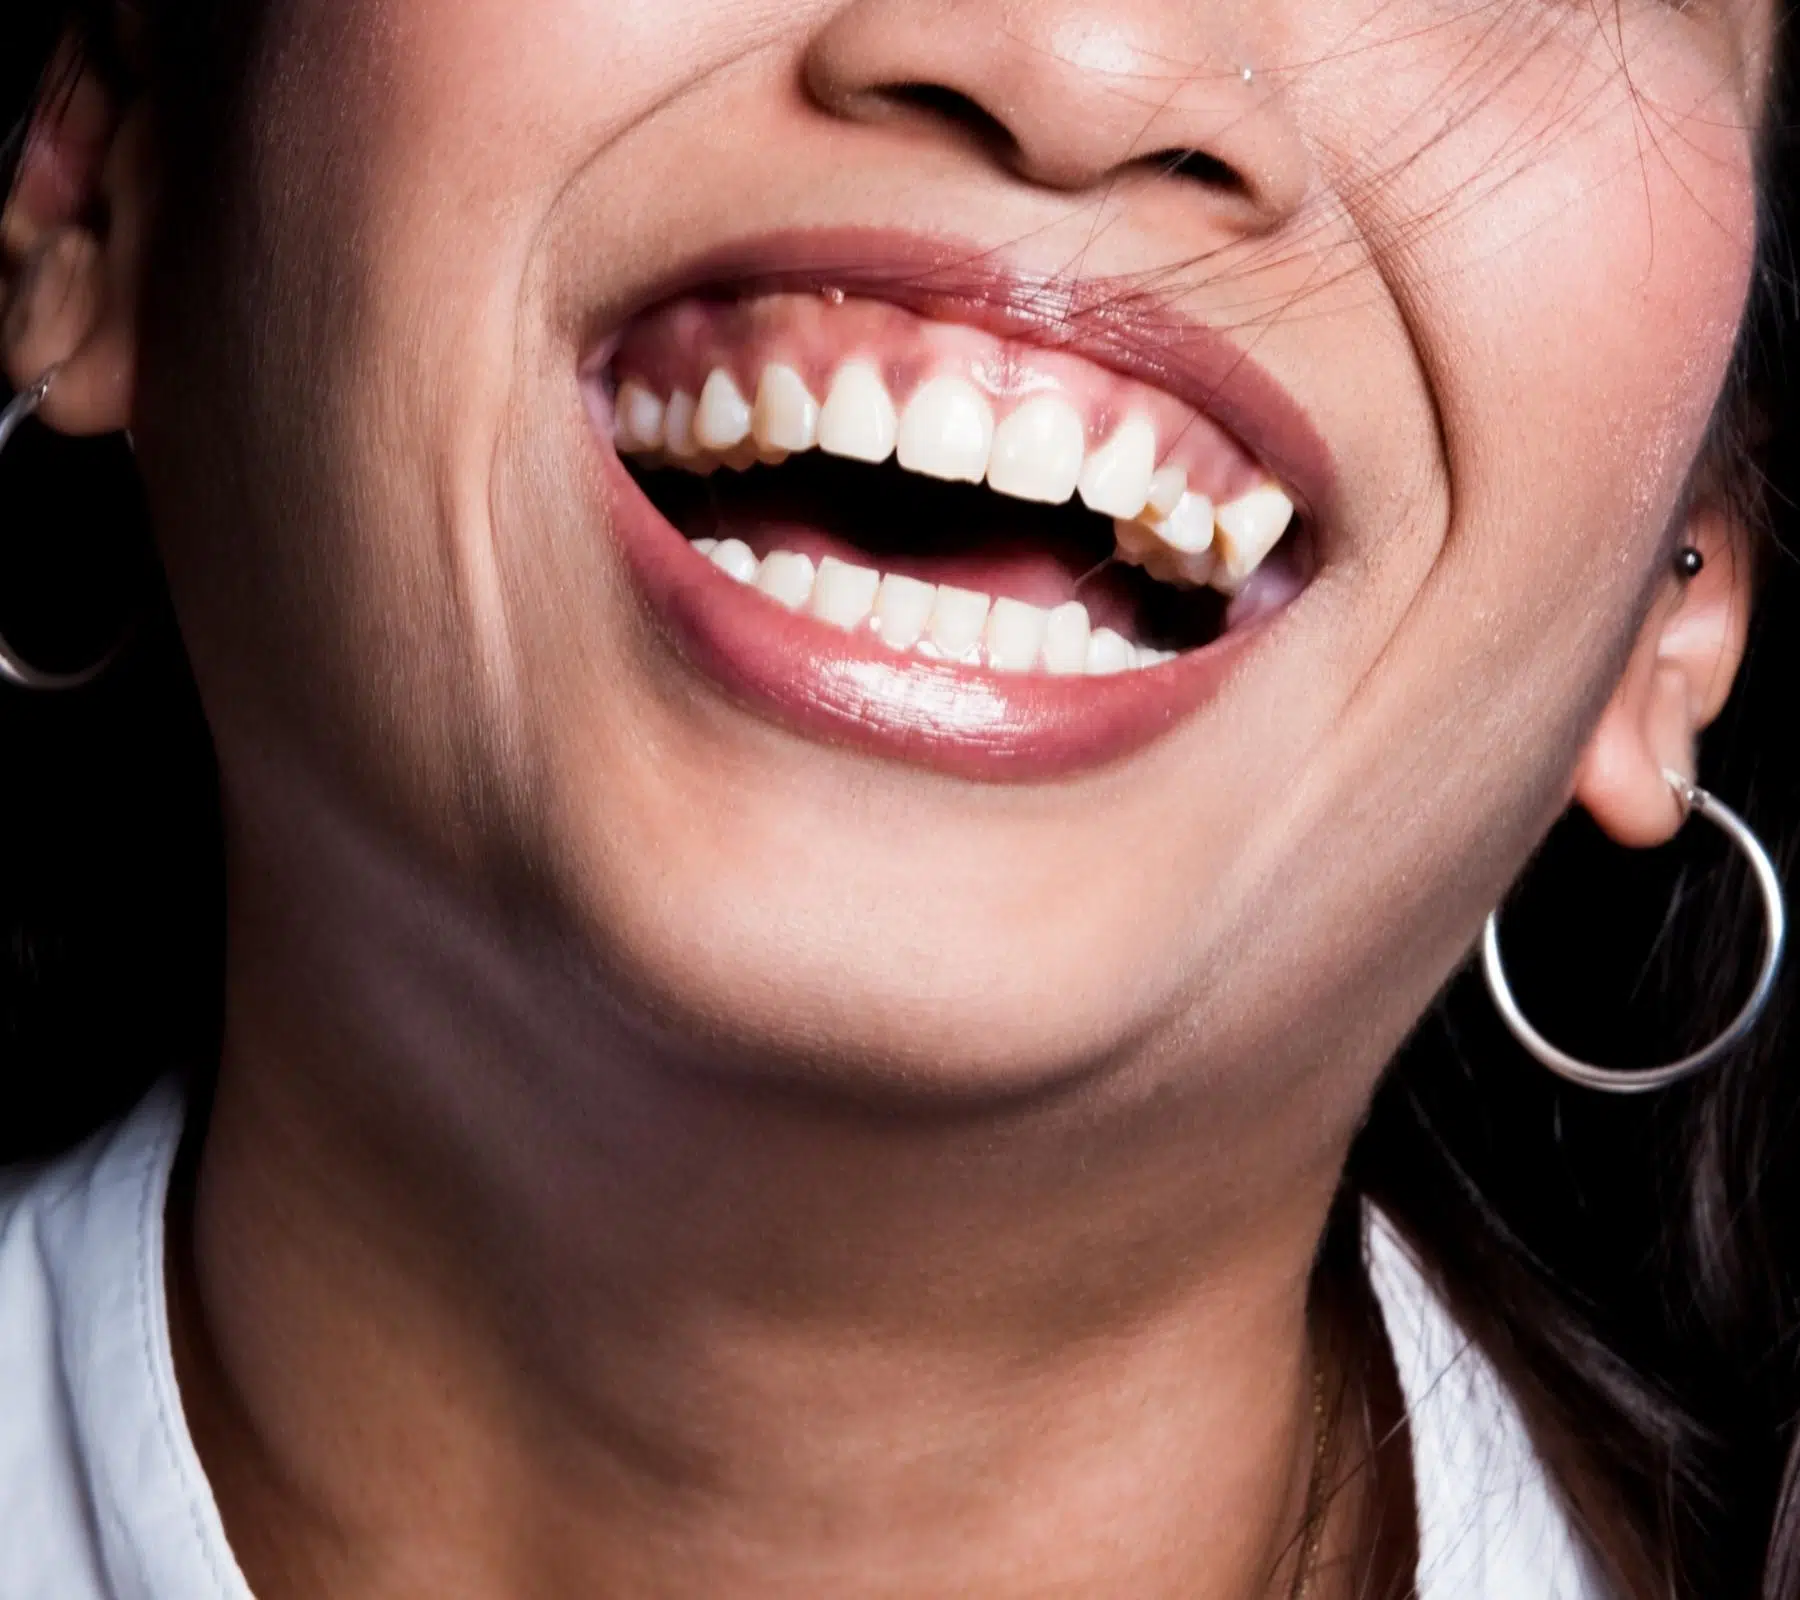 上唇垂直長度過短也會影響笑齦